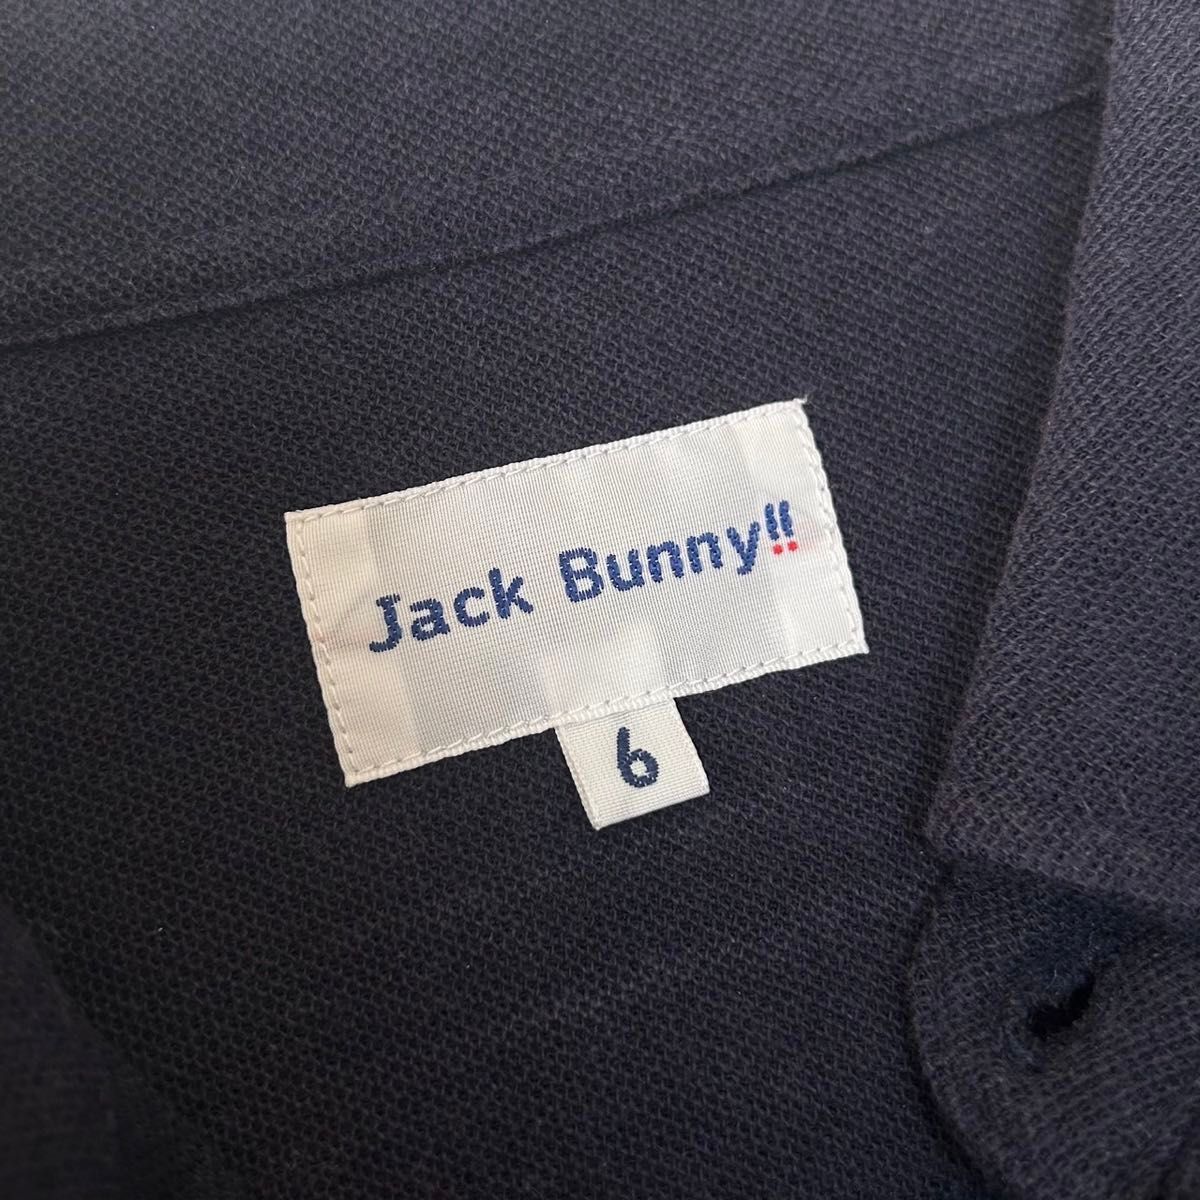 ジャックバニー 長袖 ポロシャツ XL(6表記) ゴルフウェア jack bunny